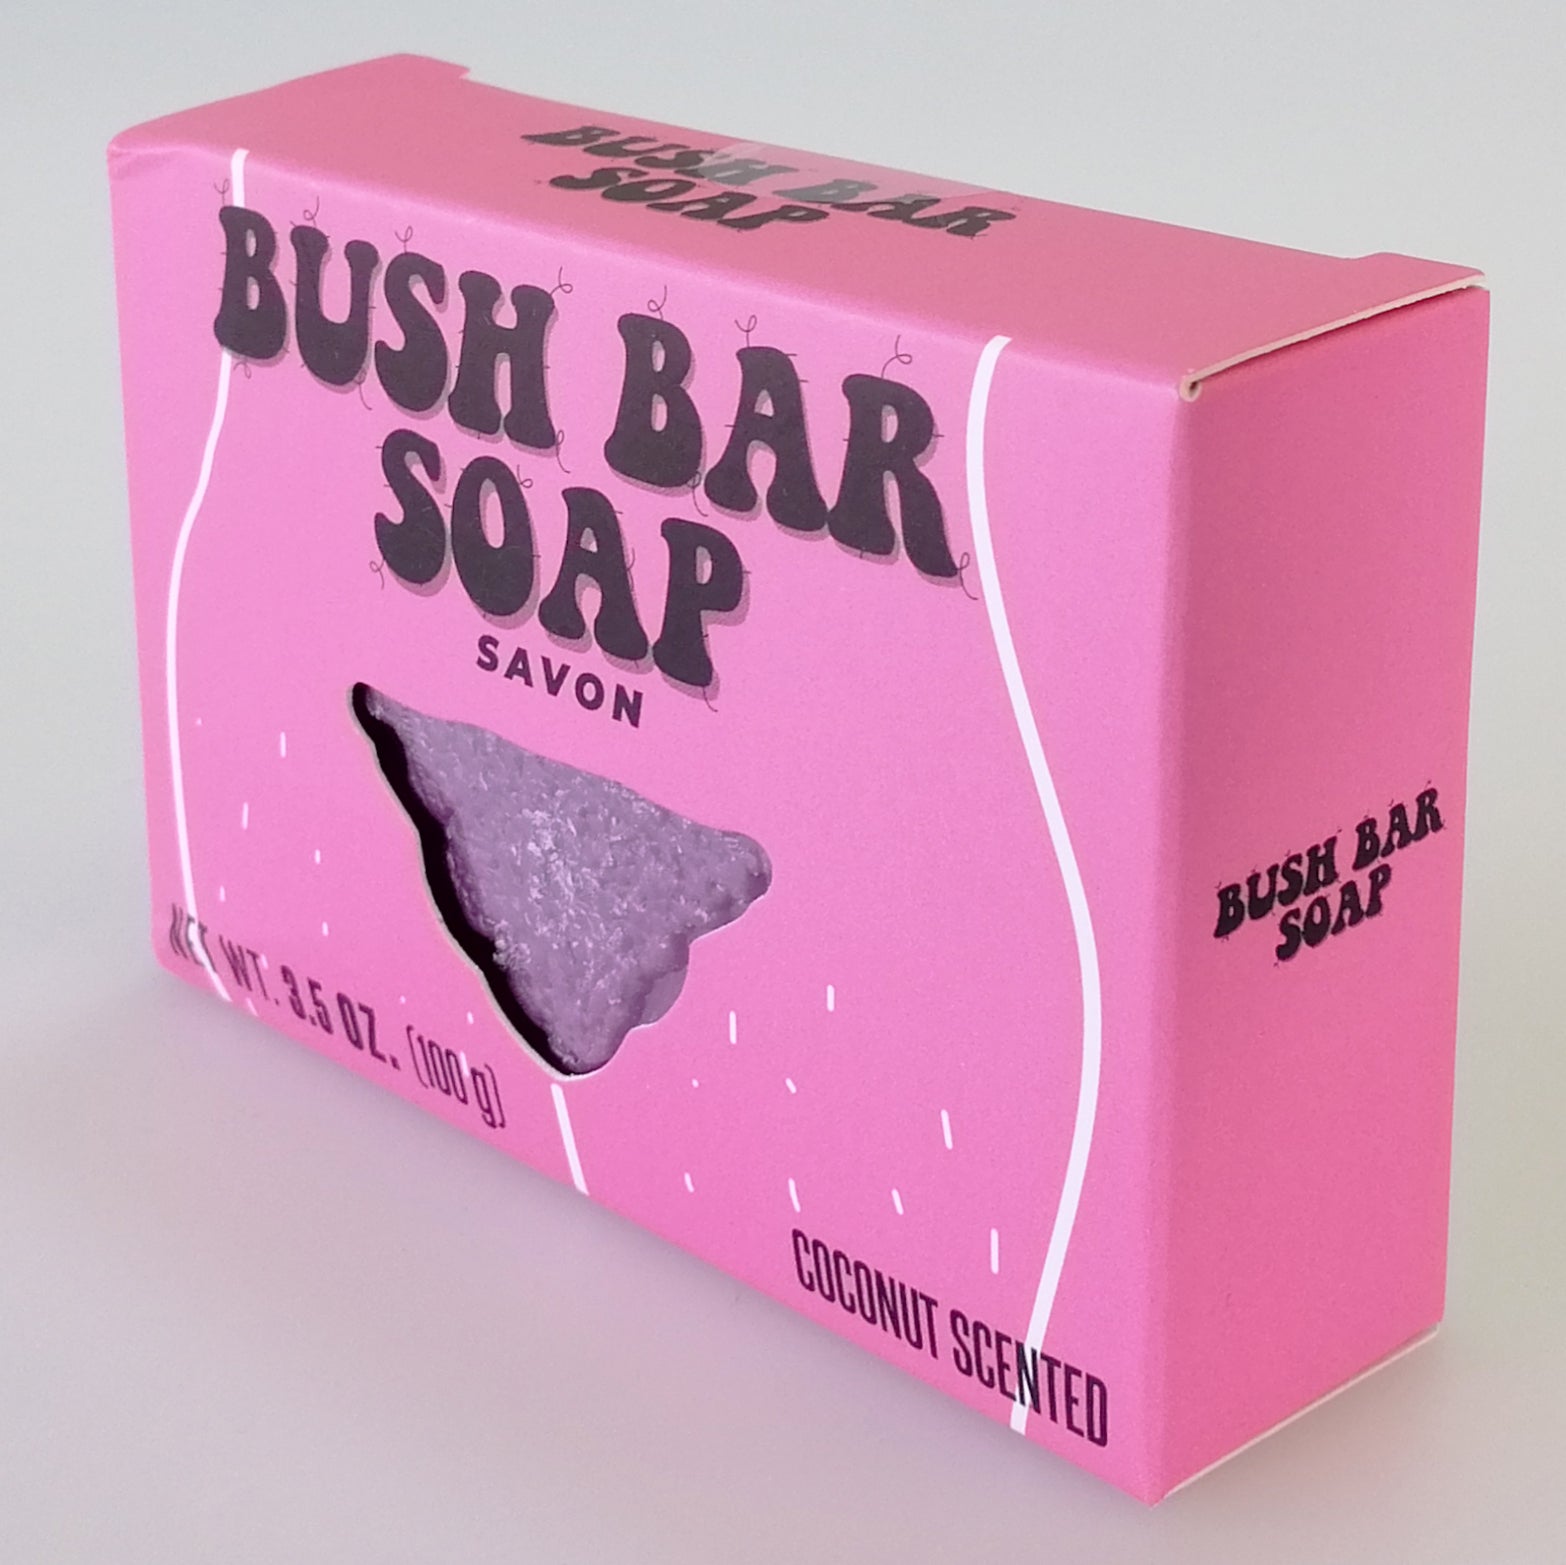 Bush Bar - Coconut Scented Soap